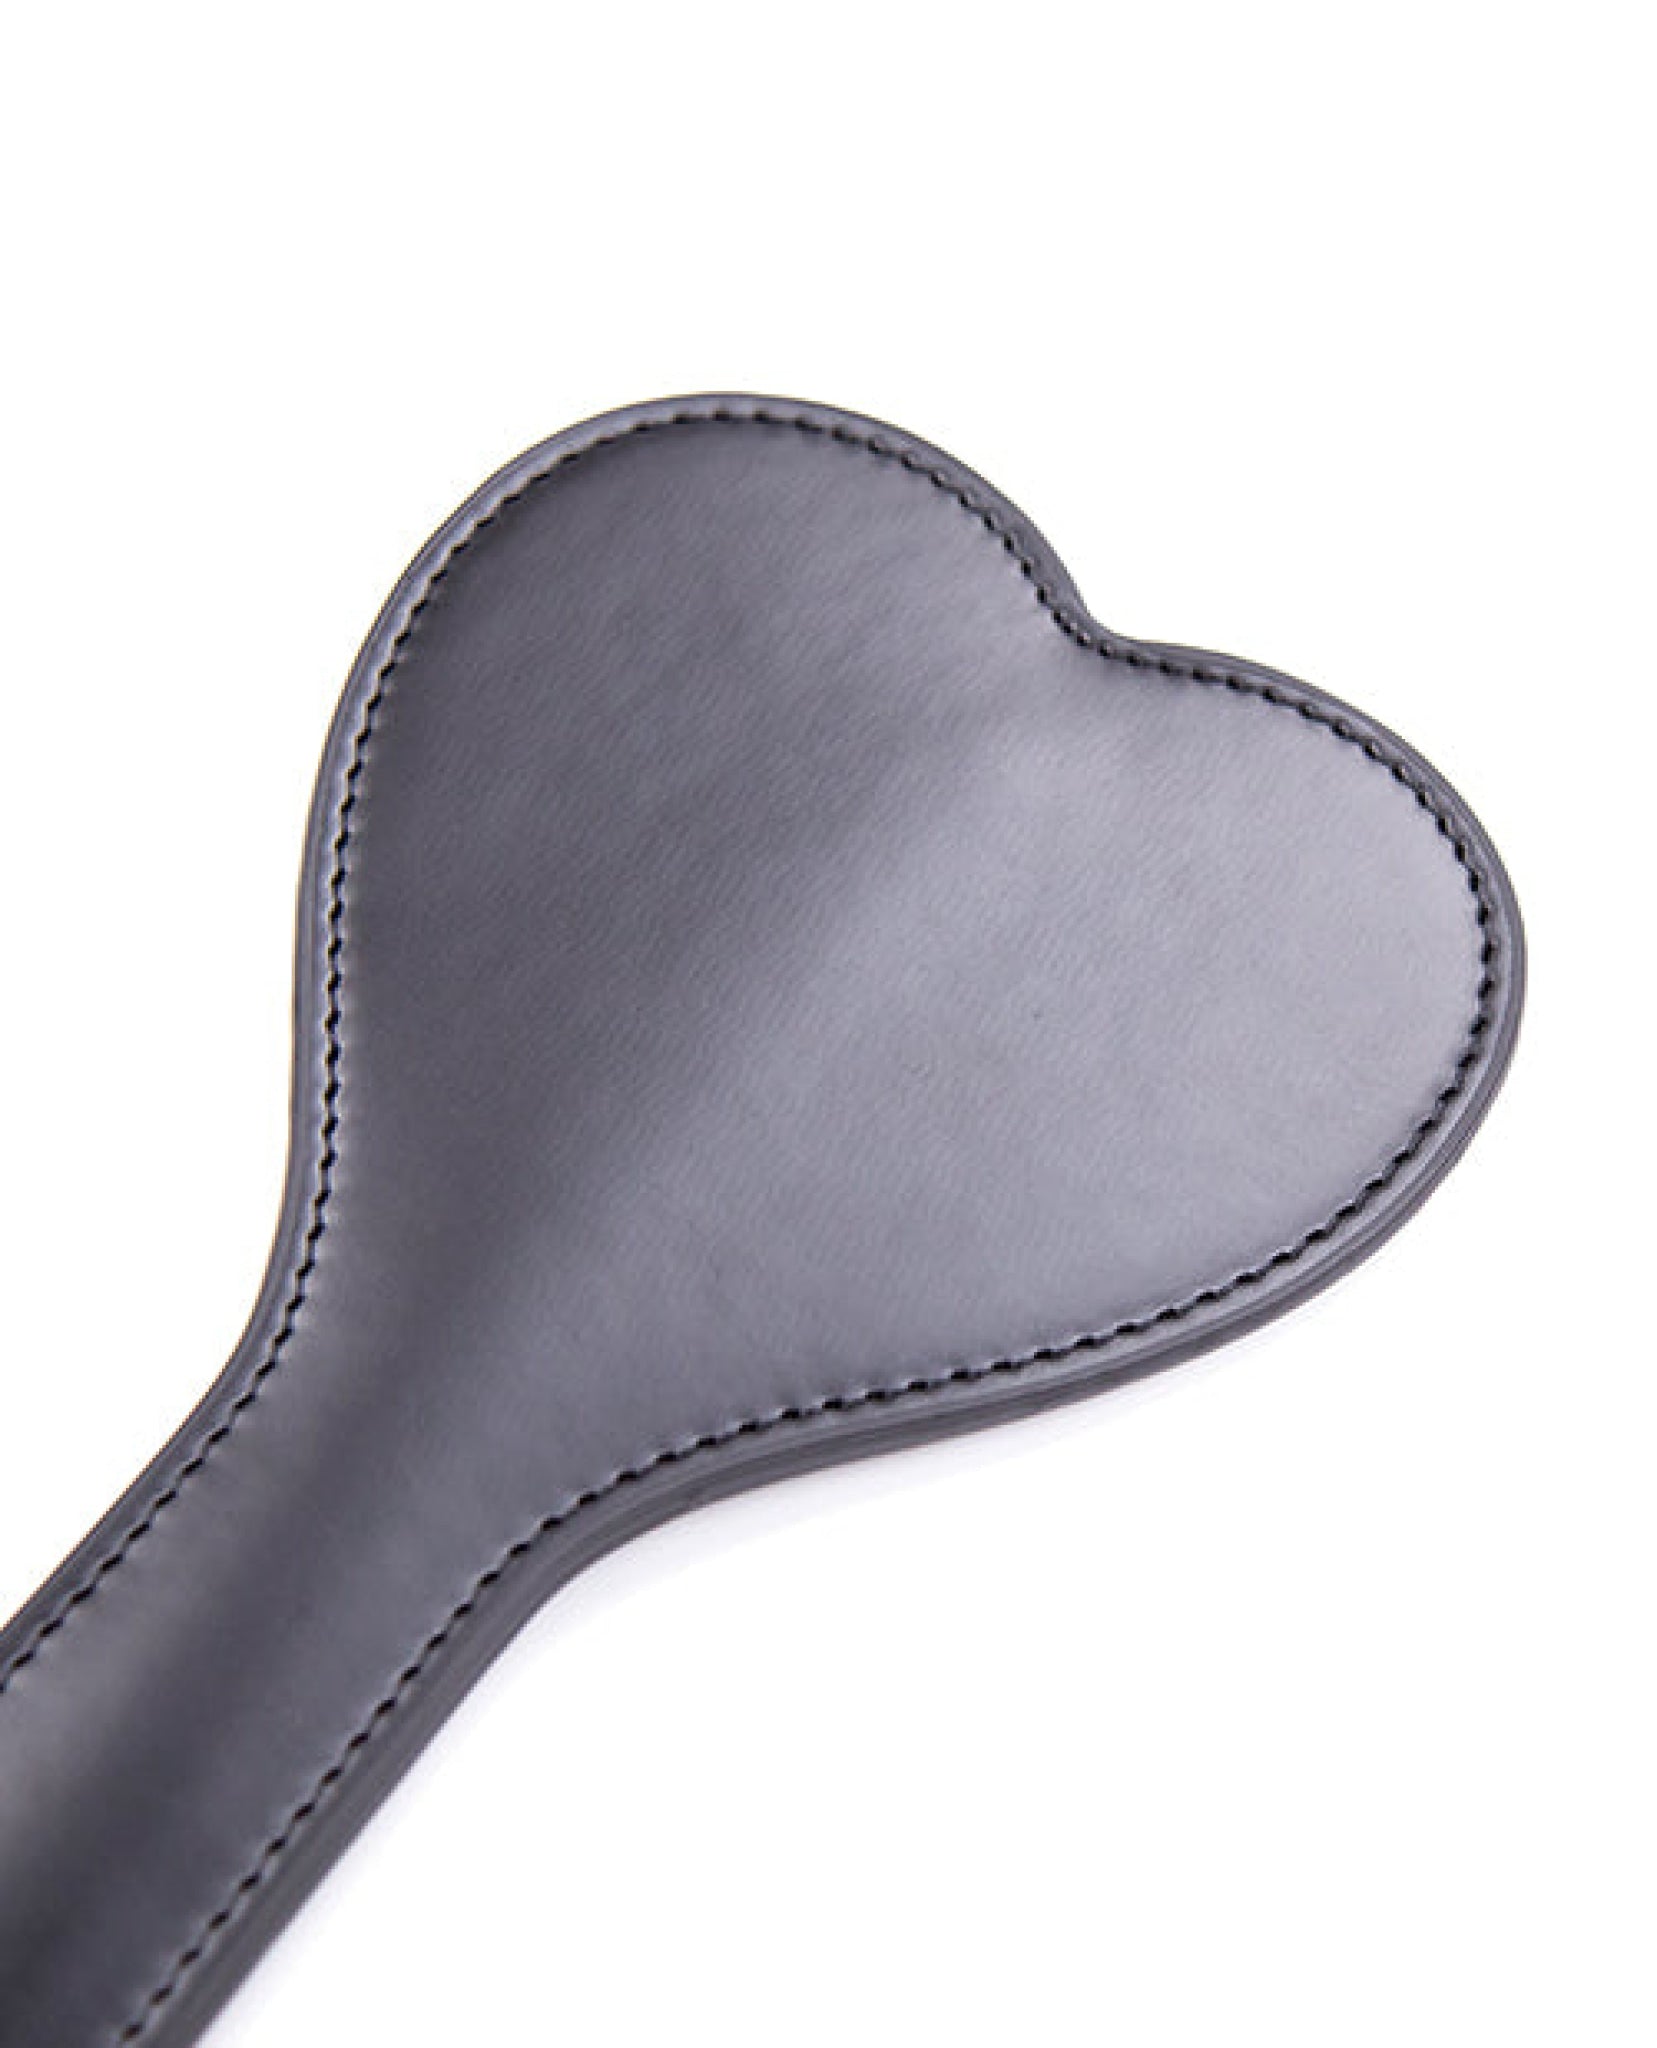 Plesur Heart-shape Paddle - Black Plesur